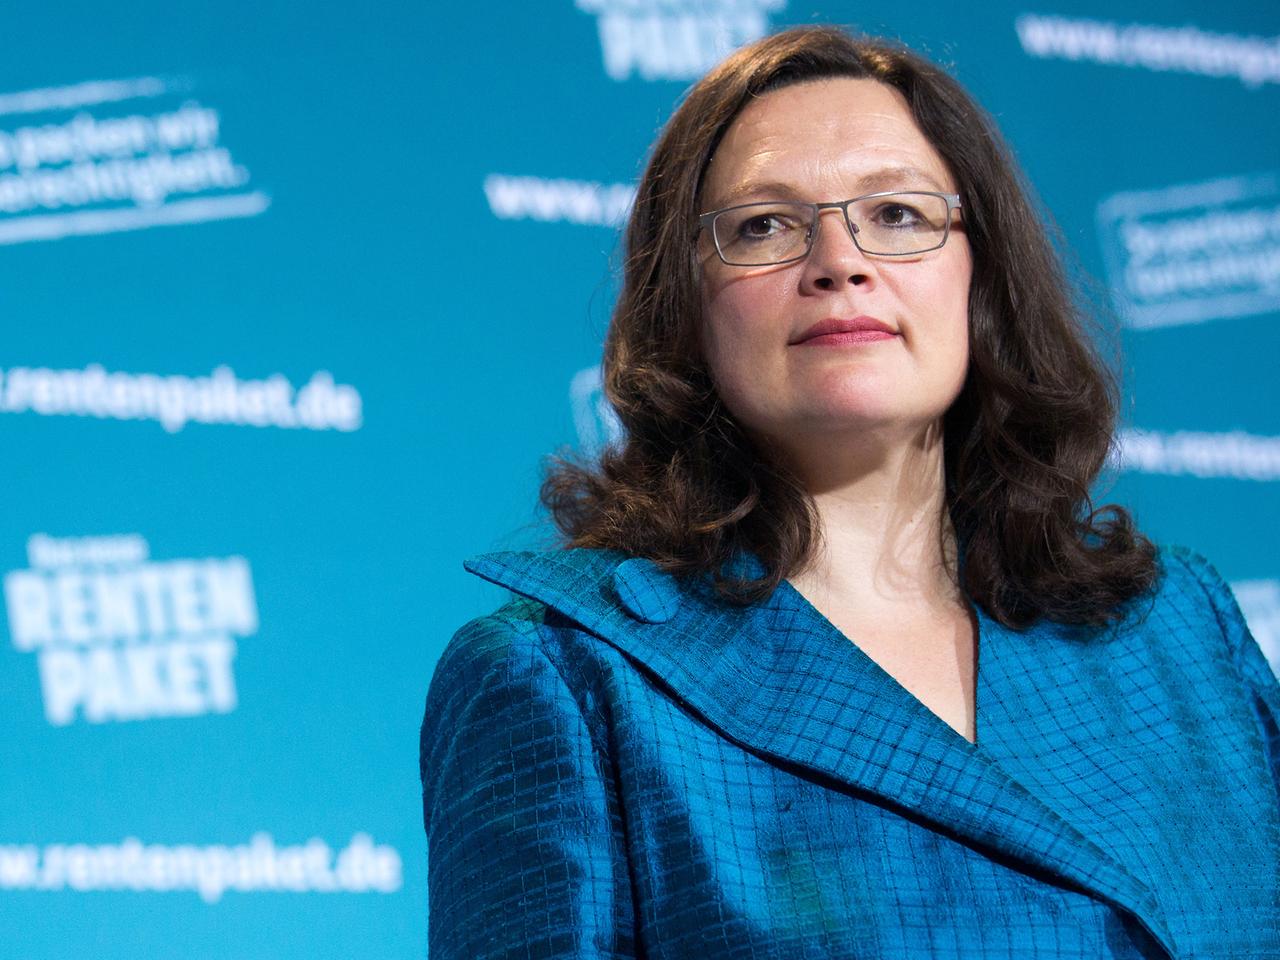 Arbeitsministerin Andrea Nahles steht vor einem blauen Hintergrund mit der Aufschrift "Rentenpaket".